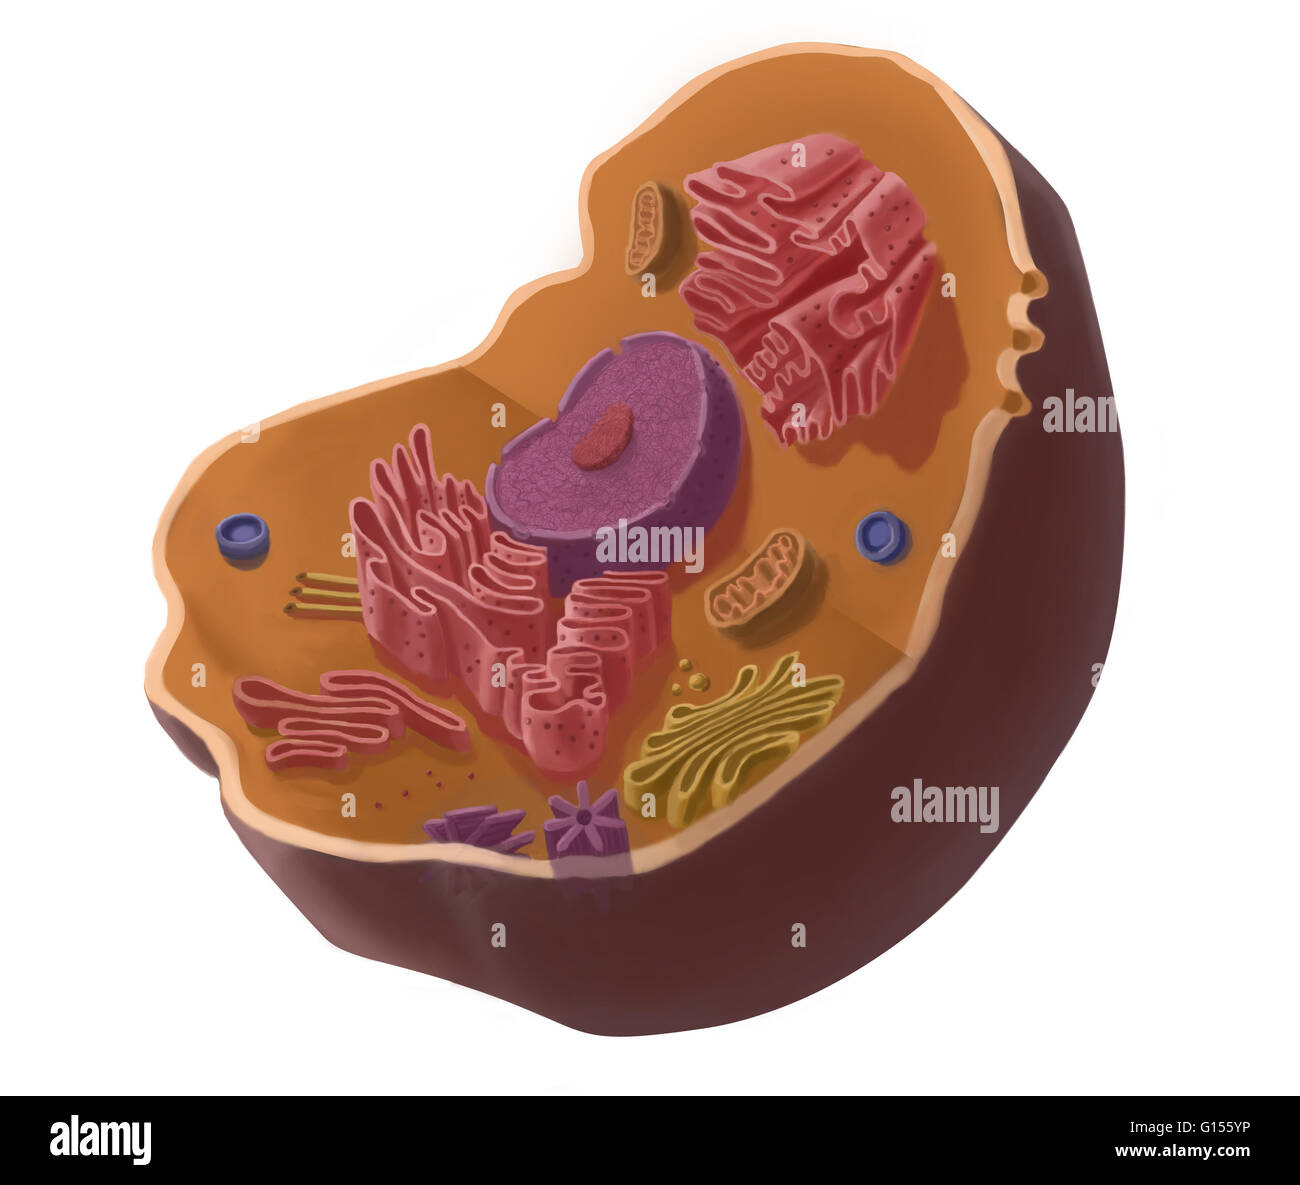 Illustrazione della cellula animale. La cella ha un nucleo nel suo centro, che contiene cromatina costituito da DNA e nucleole, composto da RNA e proteine. Attorno al nucleo troviamo il reticolo endoplasmatico, quindi l'apparato di Golgi di apparecchiatura, mitocondri, cen Foto Stock